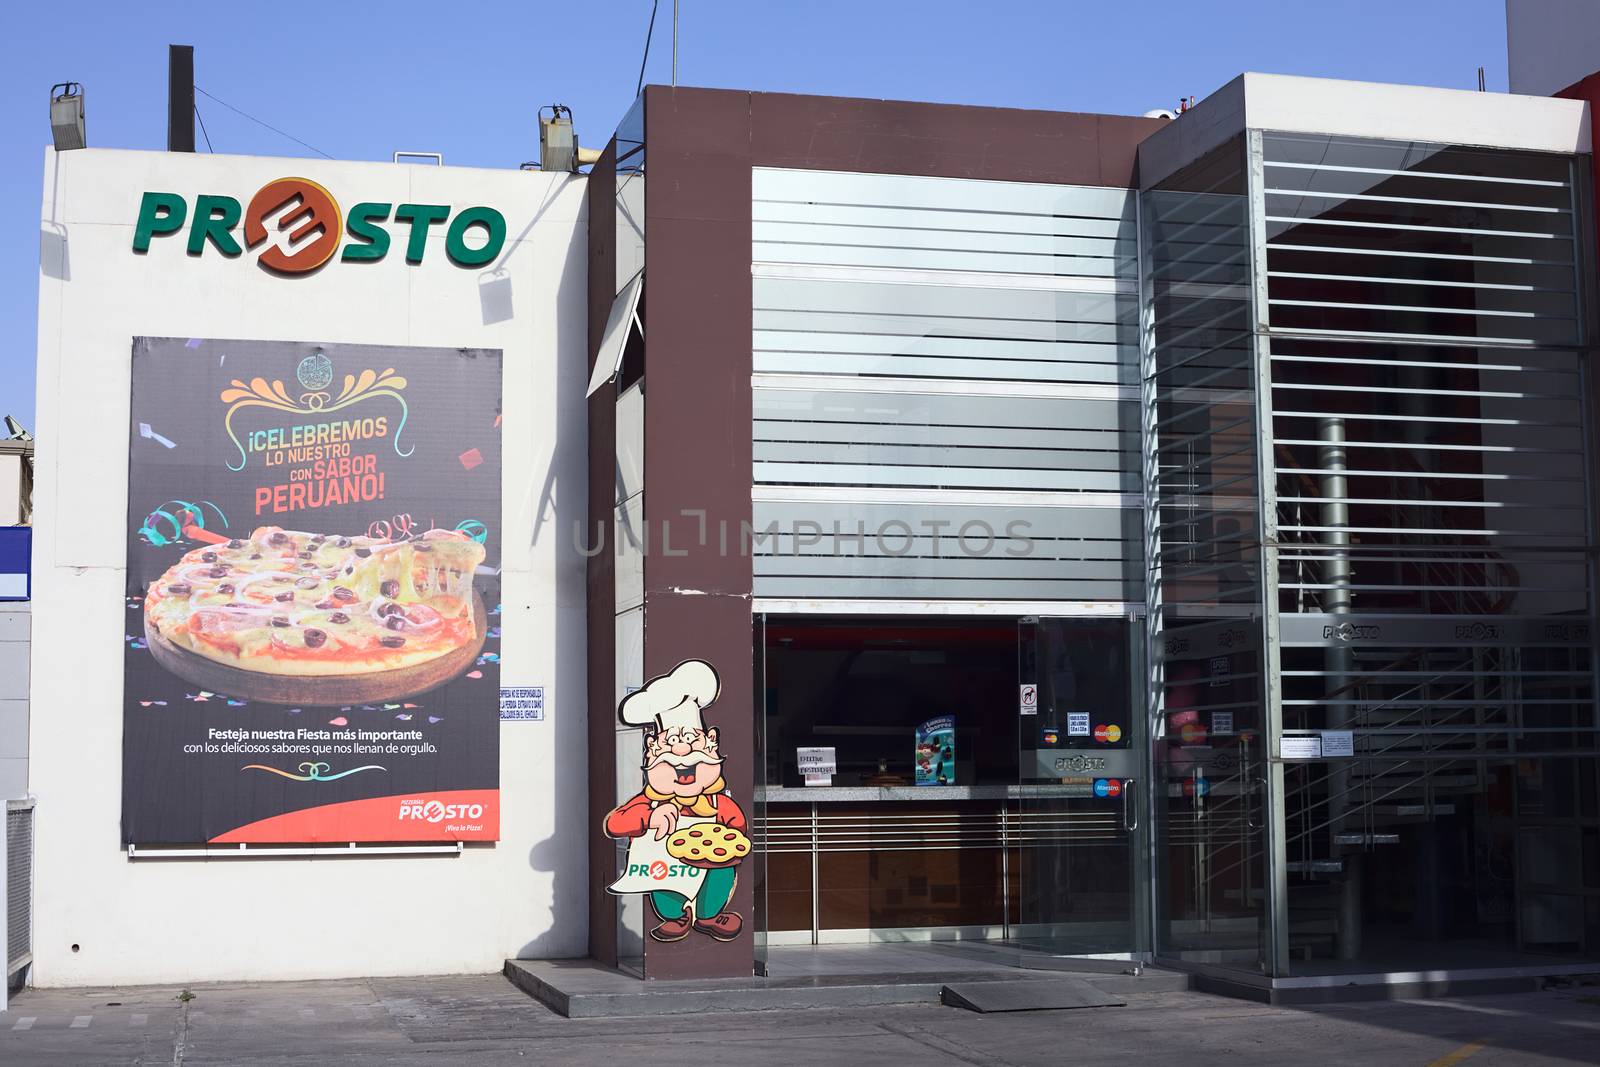 Presto Pizzeria in Arequipa, Peru by ildi